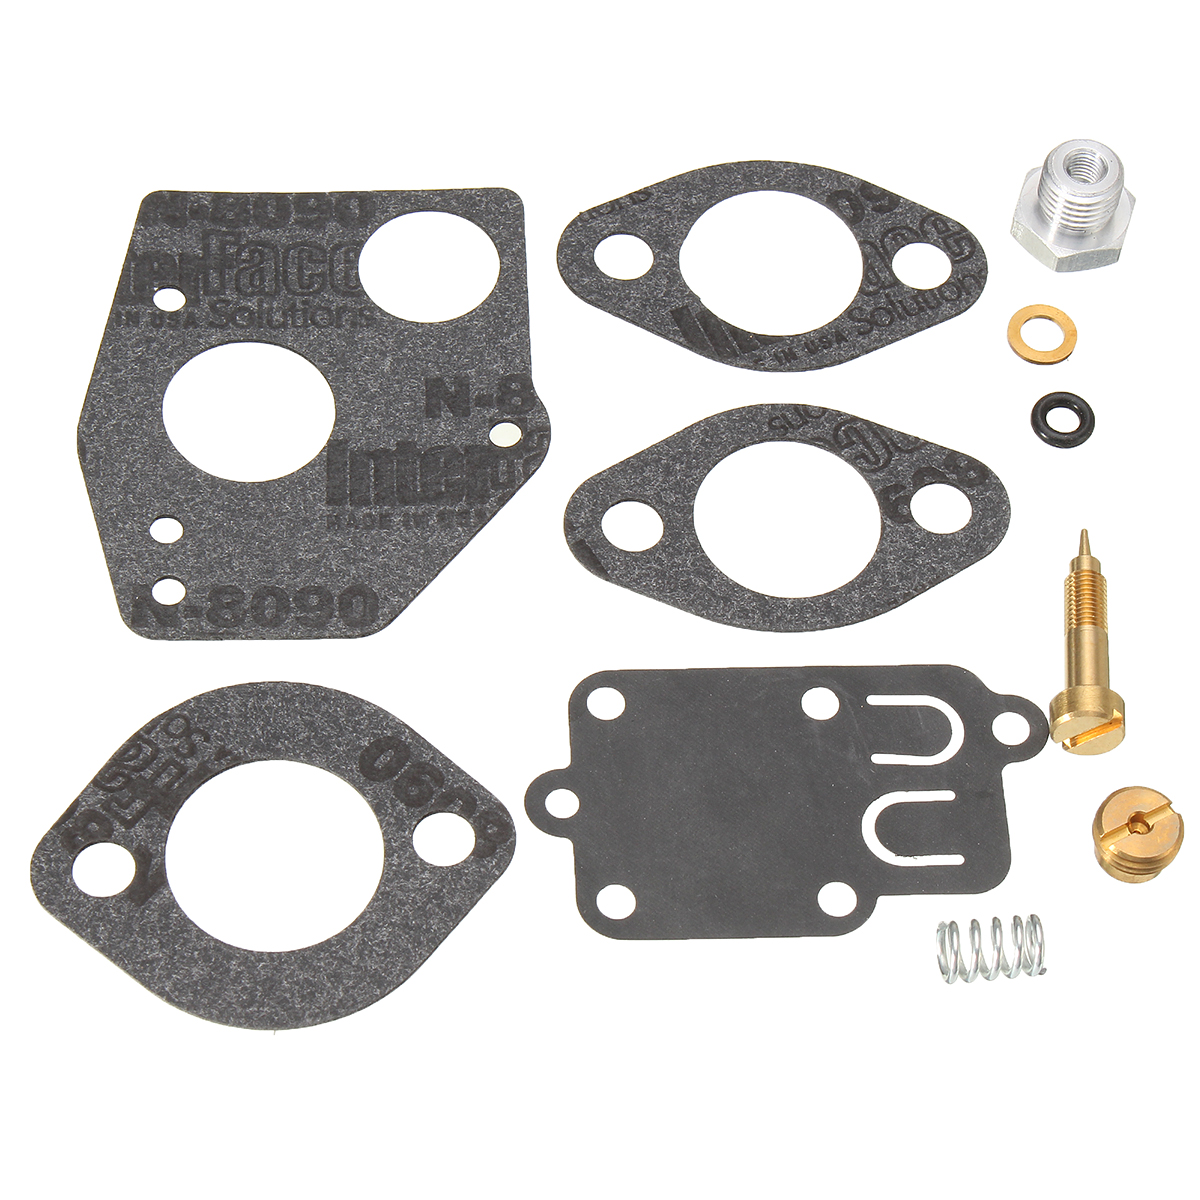 

Carburetor Carb Rebuild Repair Kit For Briggs & Stratton 495606 494624 140200